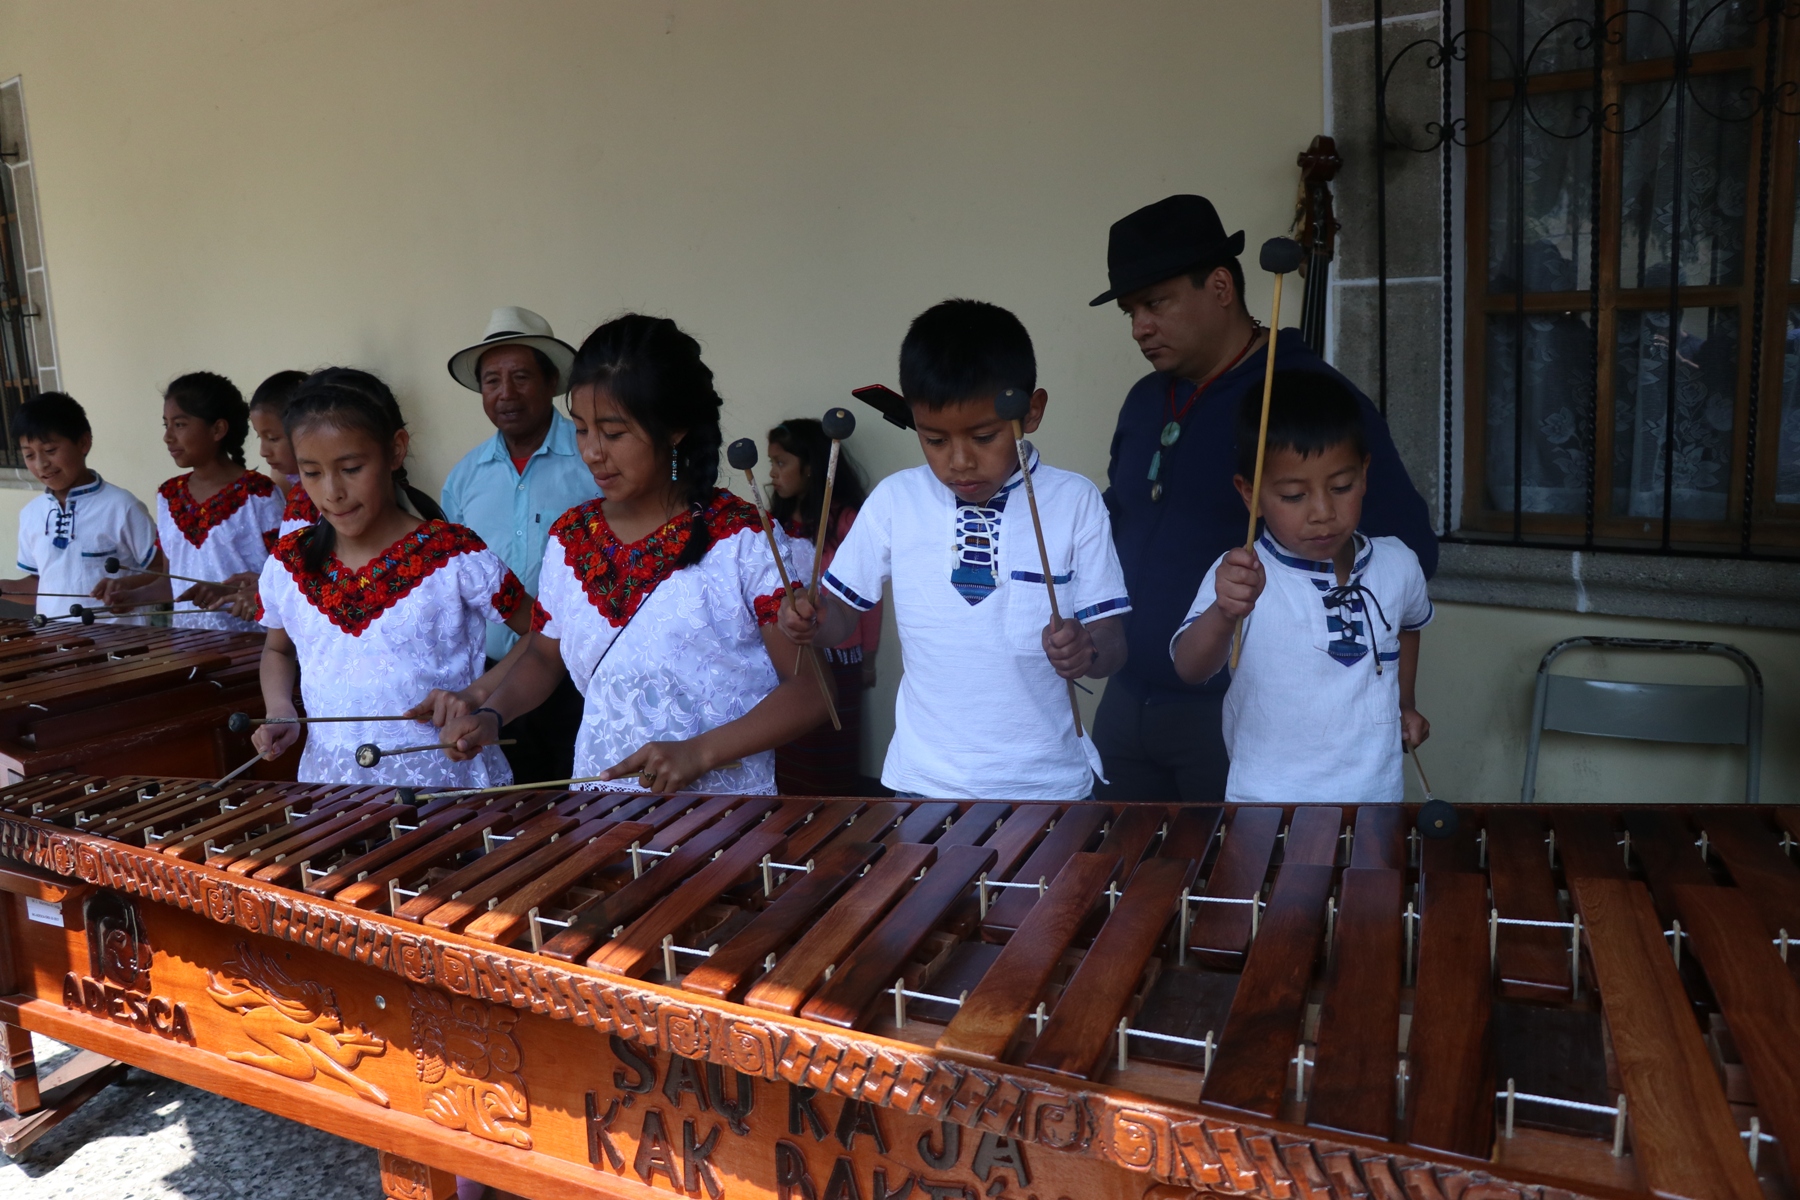 Niños que interpretan la marimba cautivan la atención de los asistentes. (Foto Prensa Libre: María Longo)  